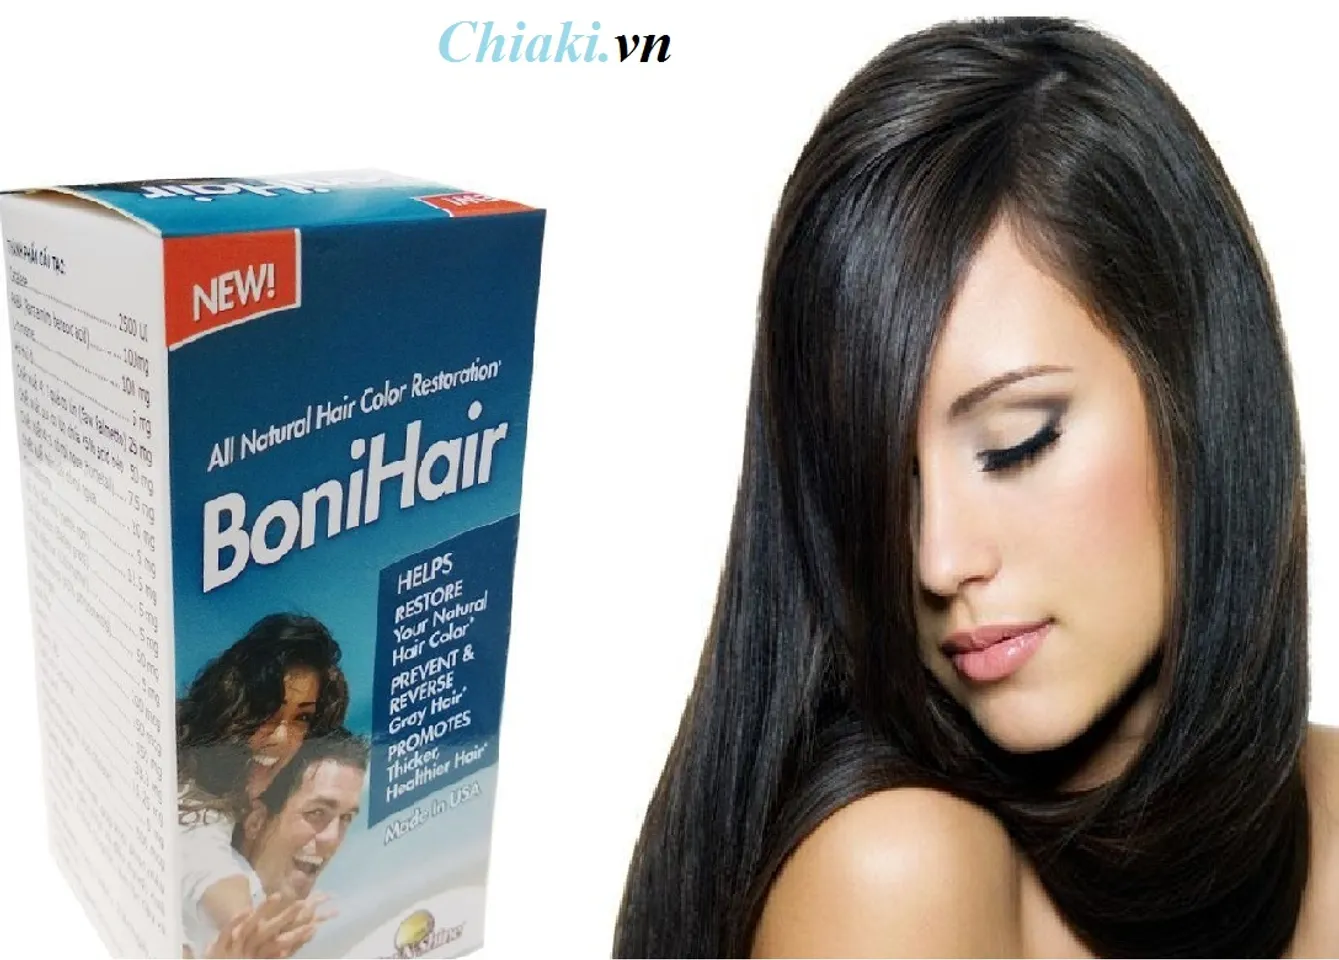 Bonihair được chiết xuất hoàn toàn từ thảo dược giúp ngăn ngừa và cải thiện tóc bạc sớm, kích thích mọc tóc